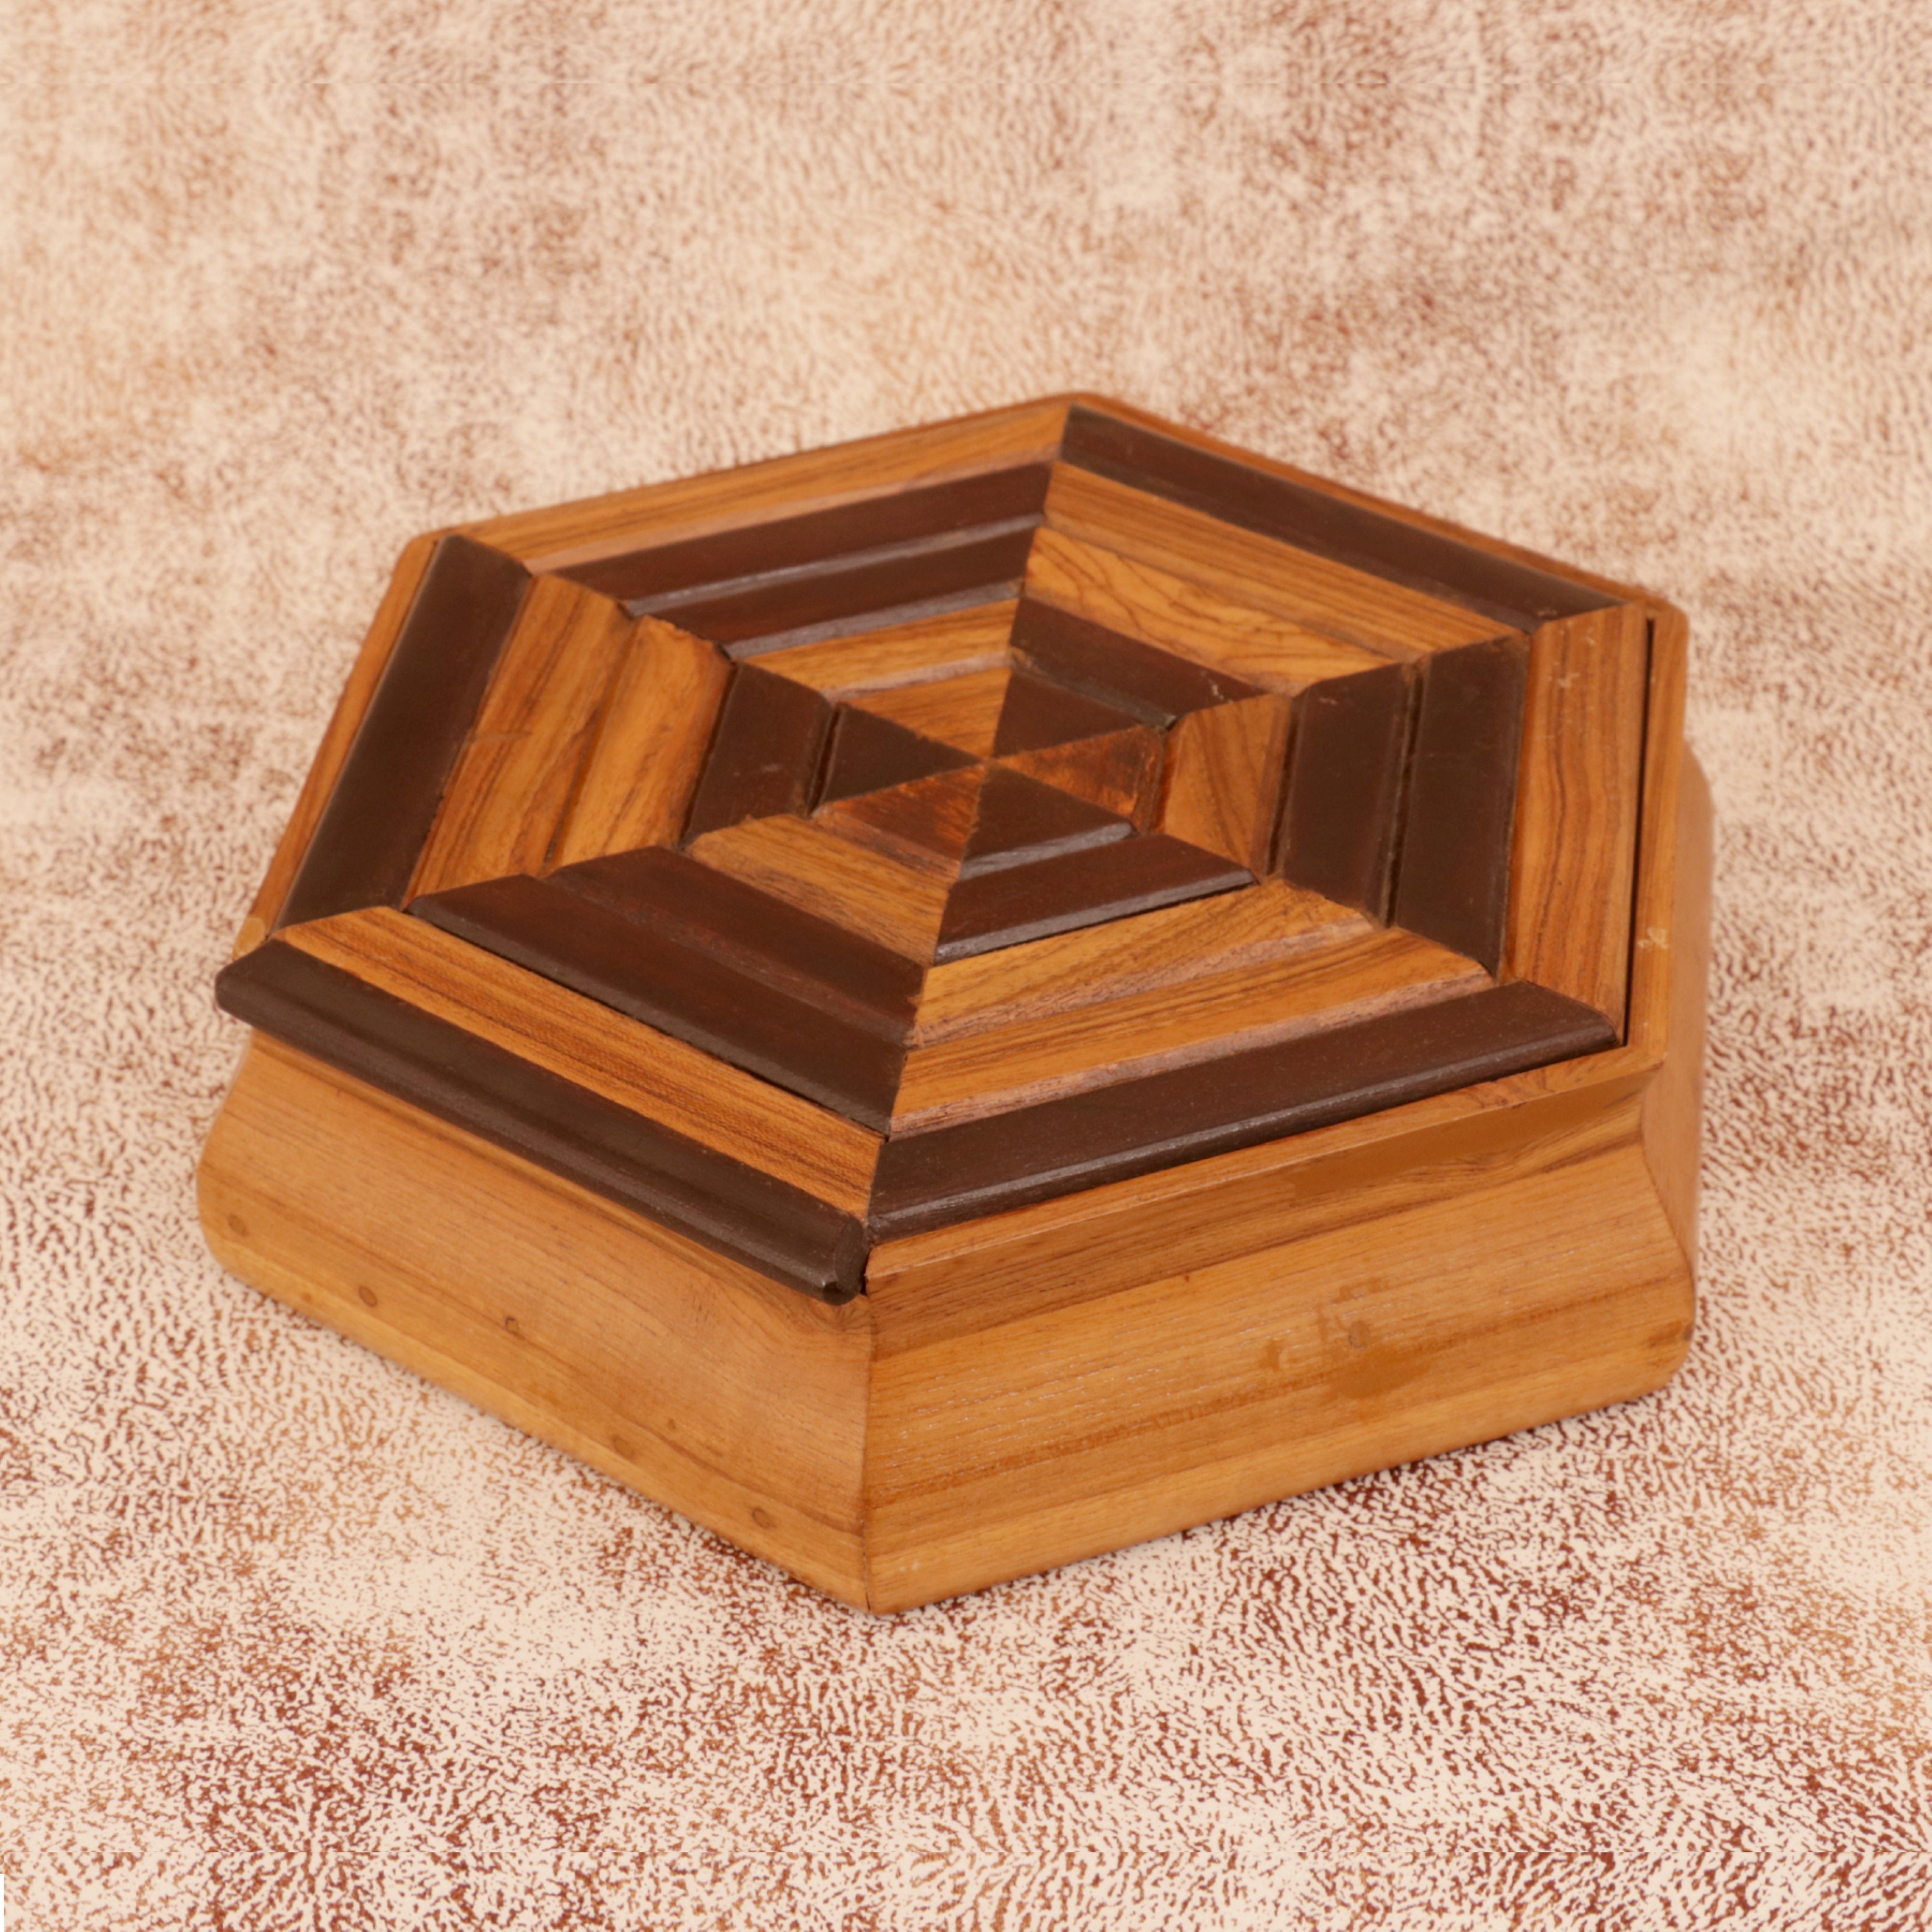 Fan Patterned Box Wooden Box